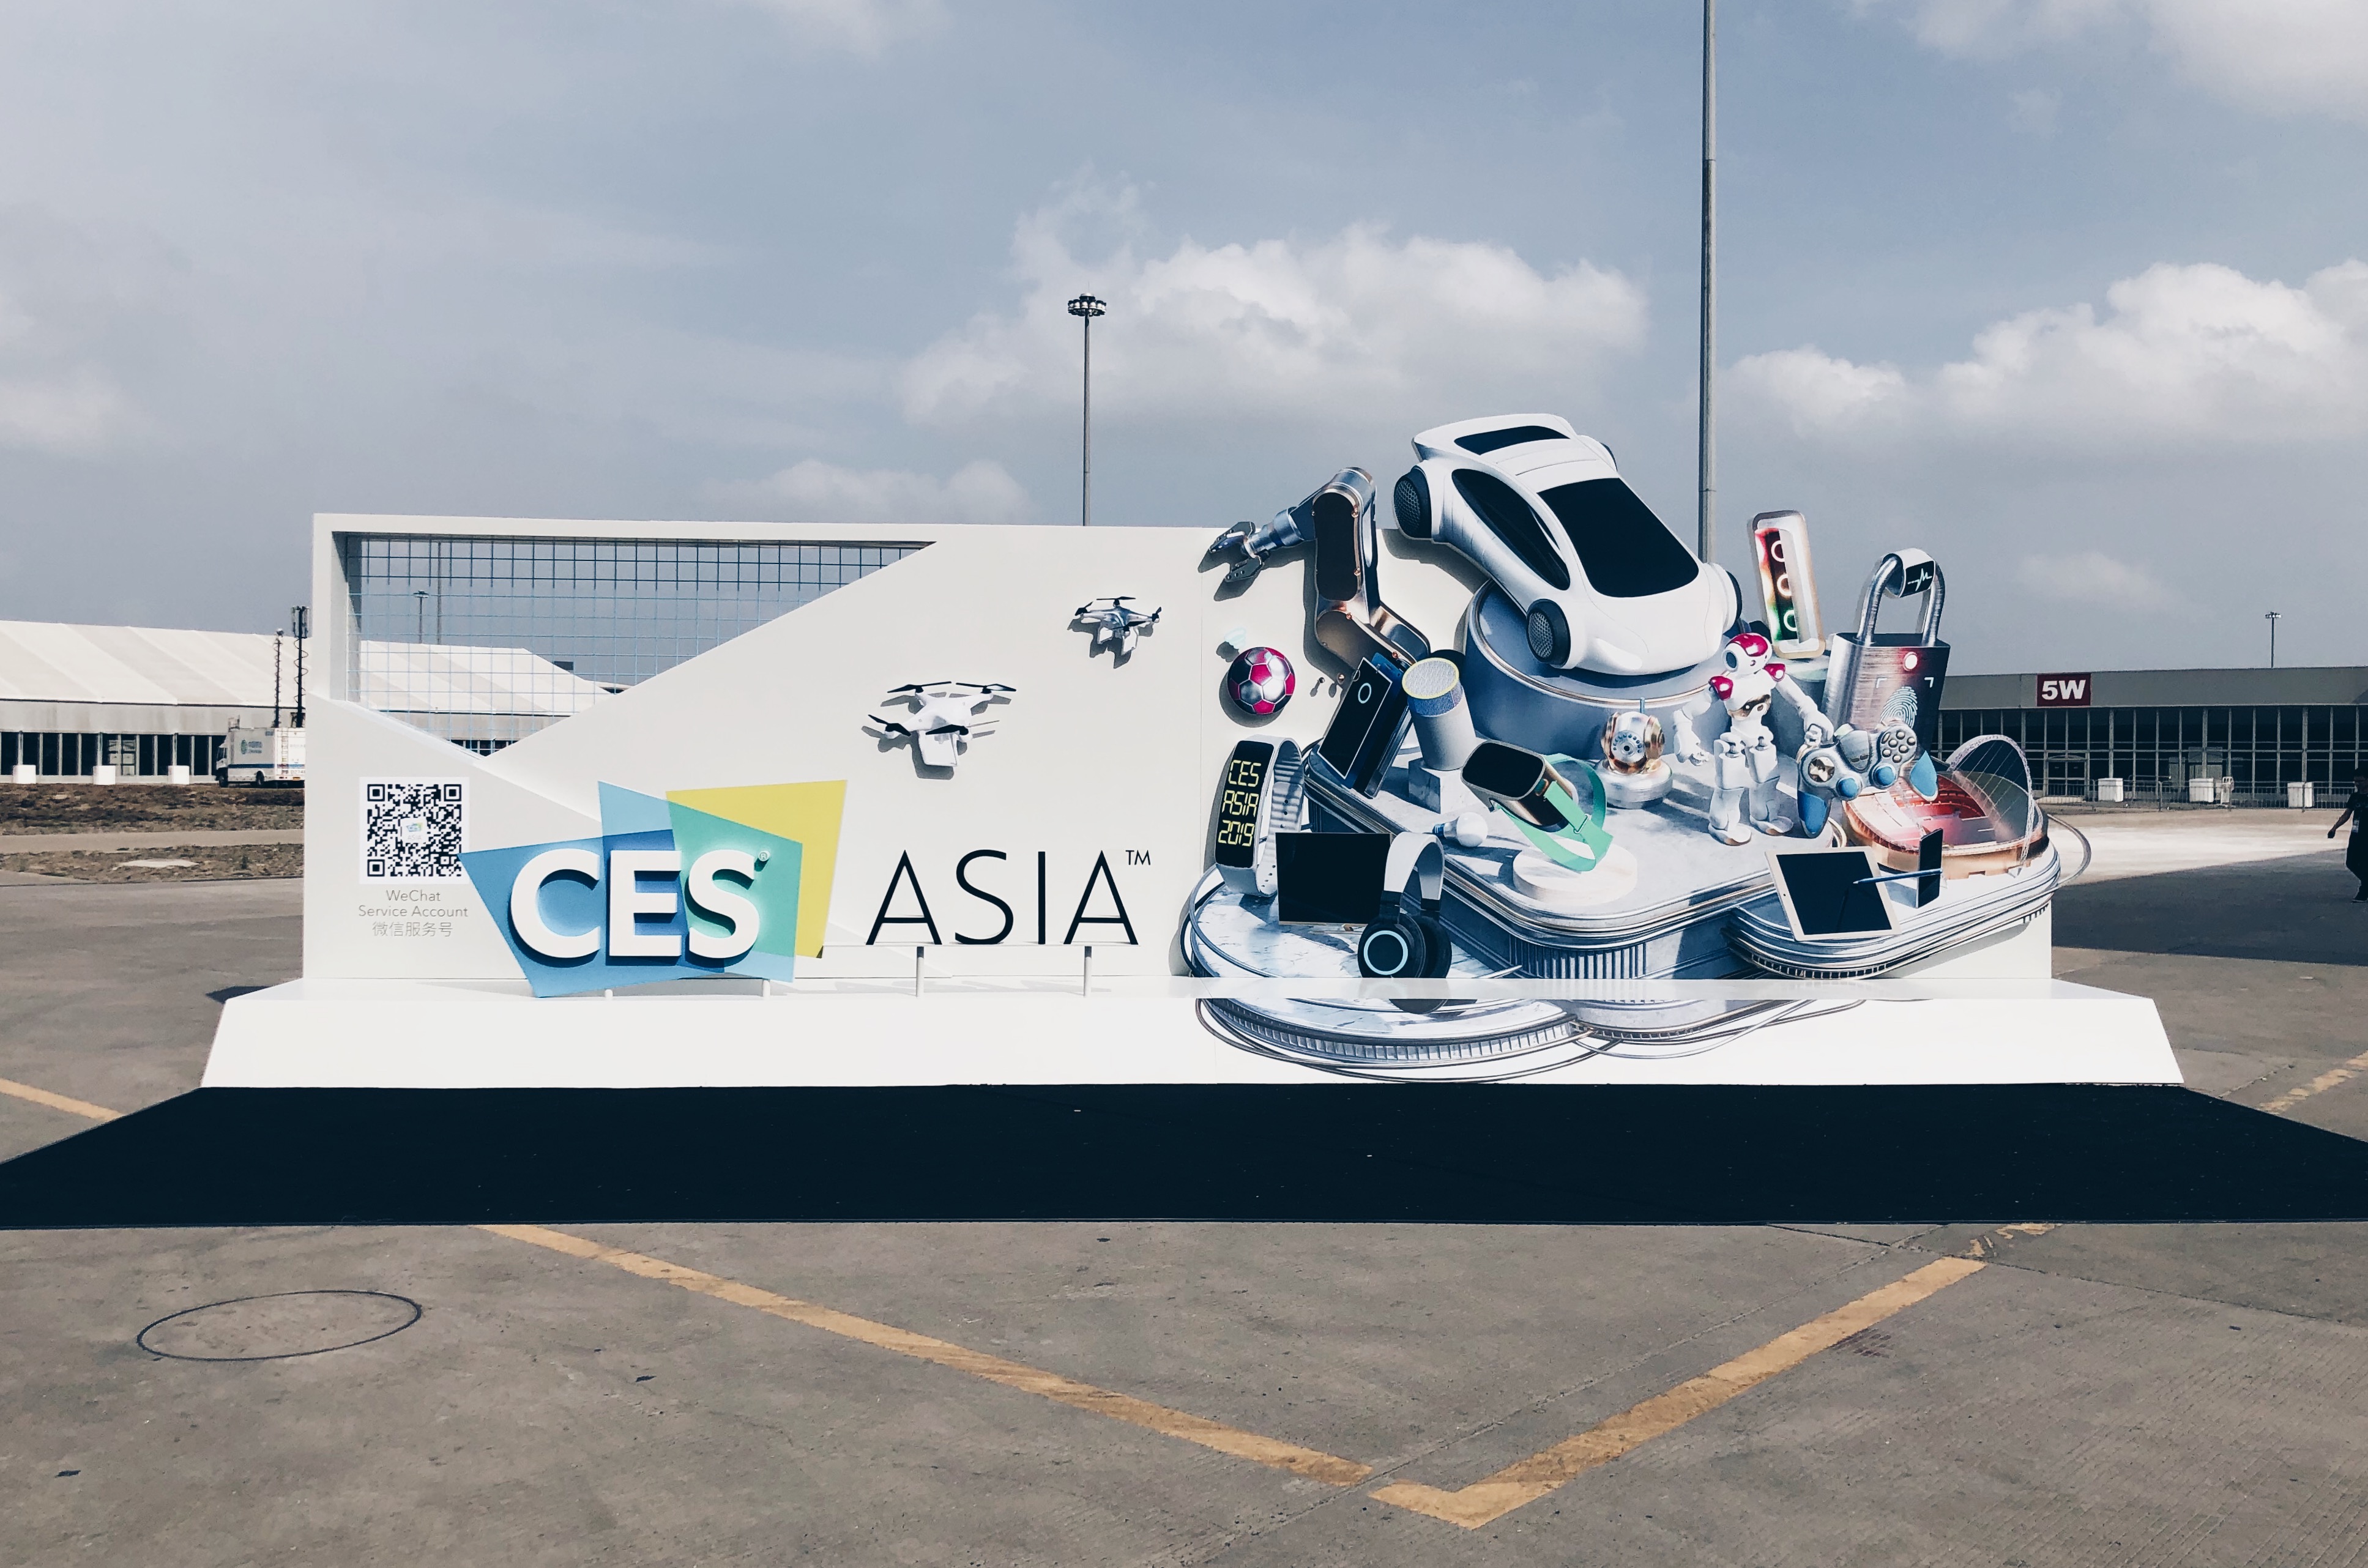 CES Asia 2019 Exhibition